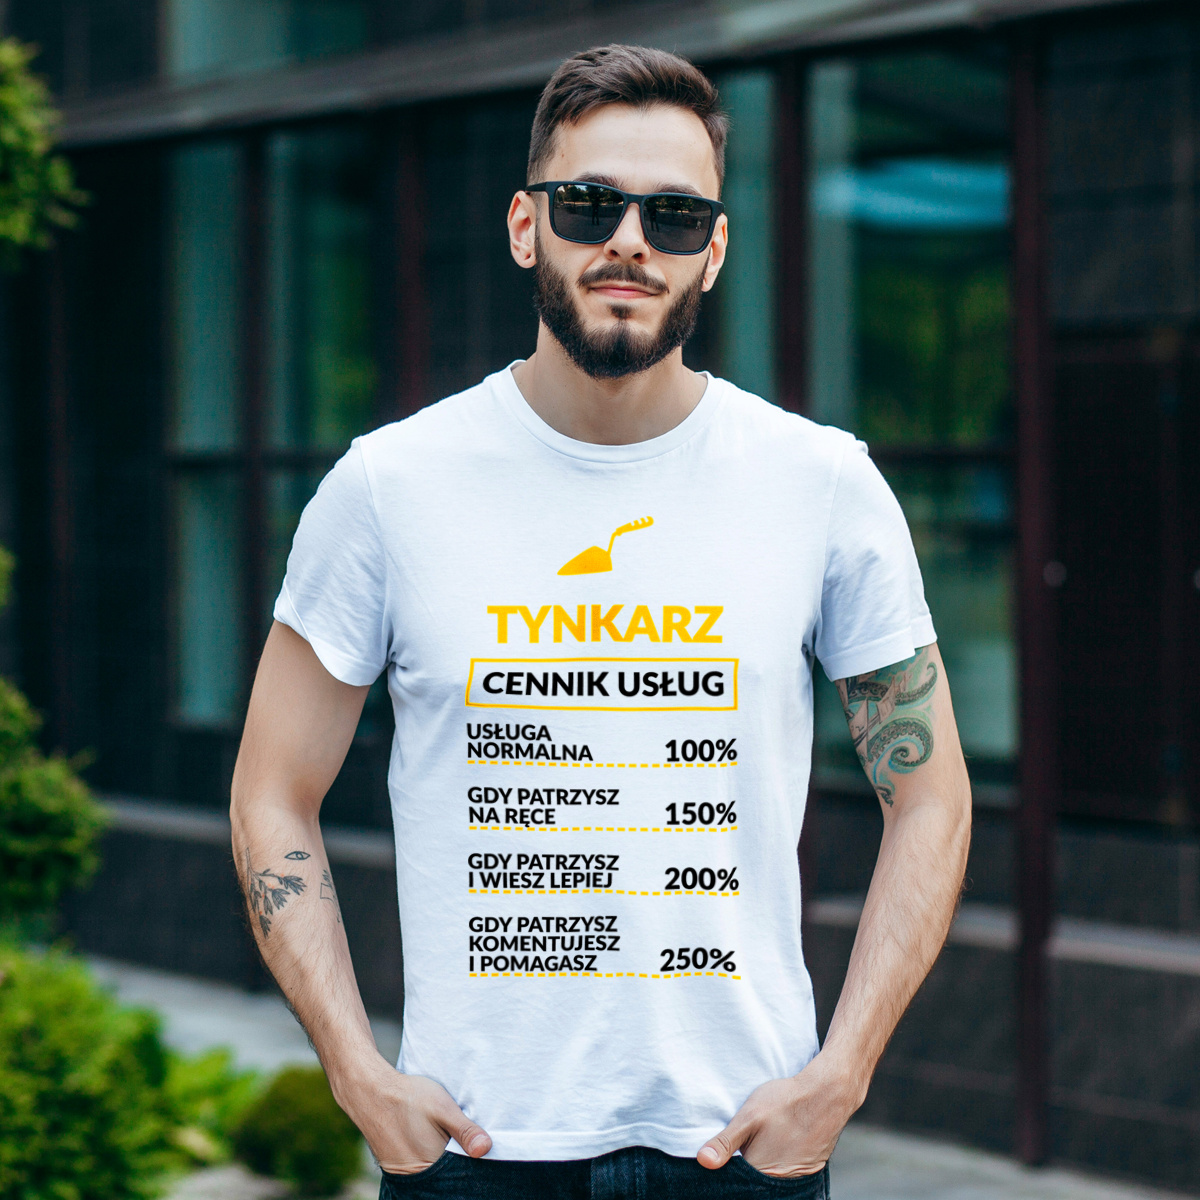 Tynkarz - Cennik Usług - Męska Koszulka Biała